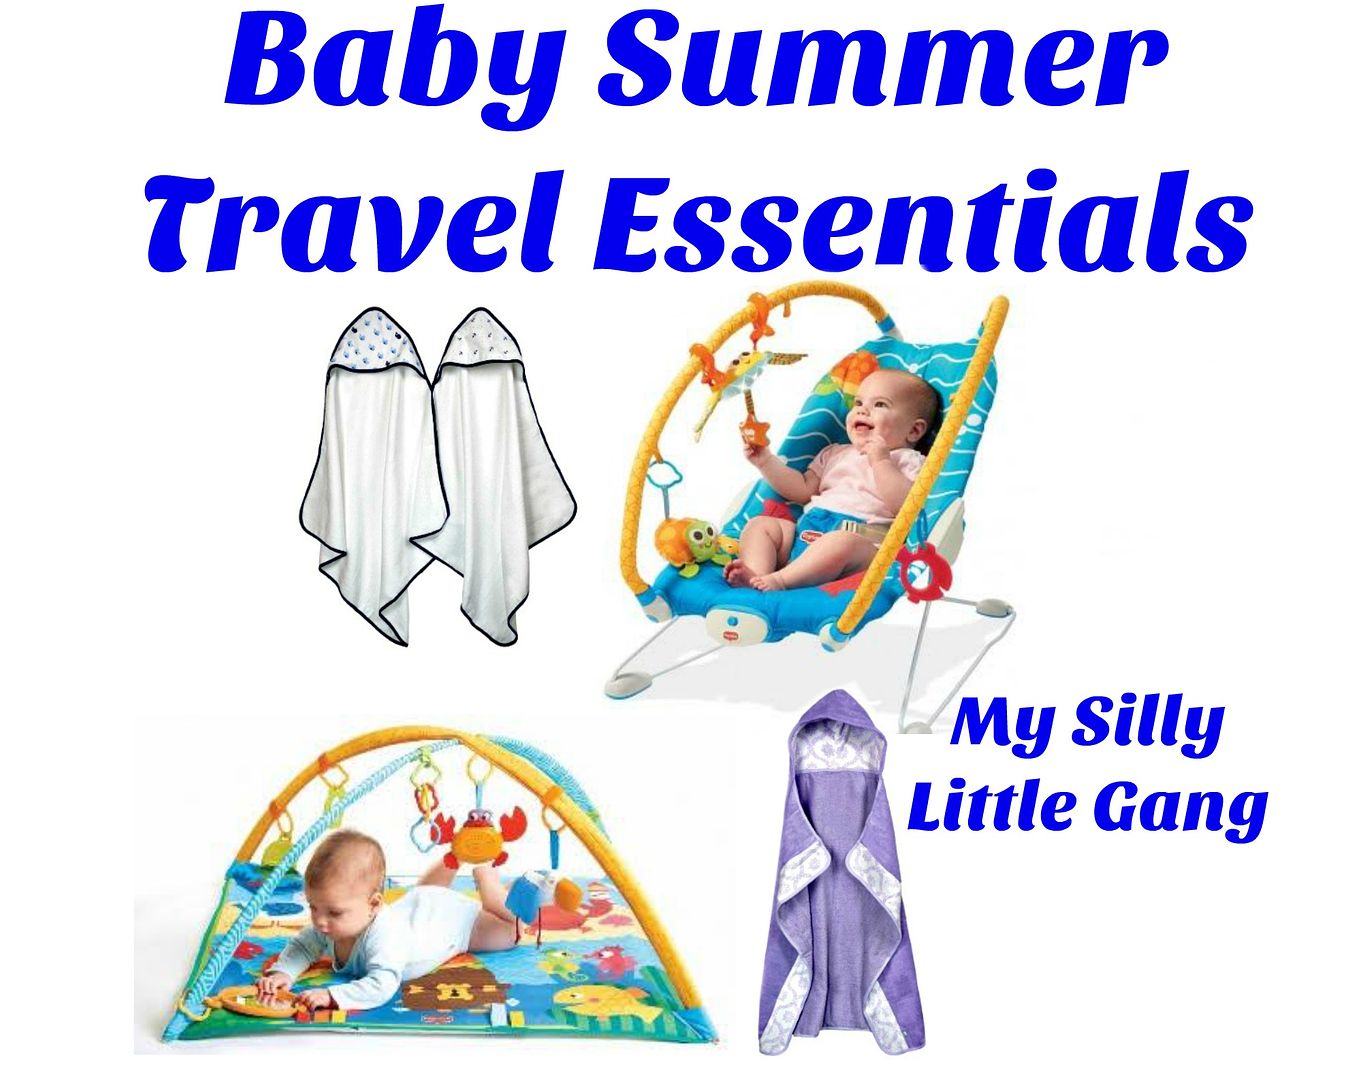 Baby Summer Travel Essentials